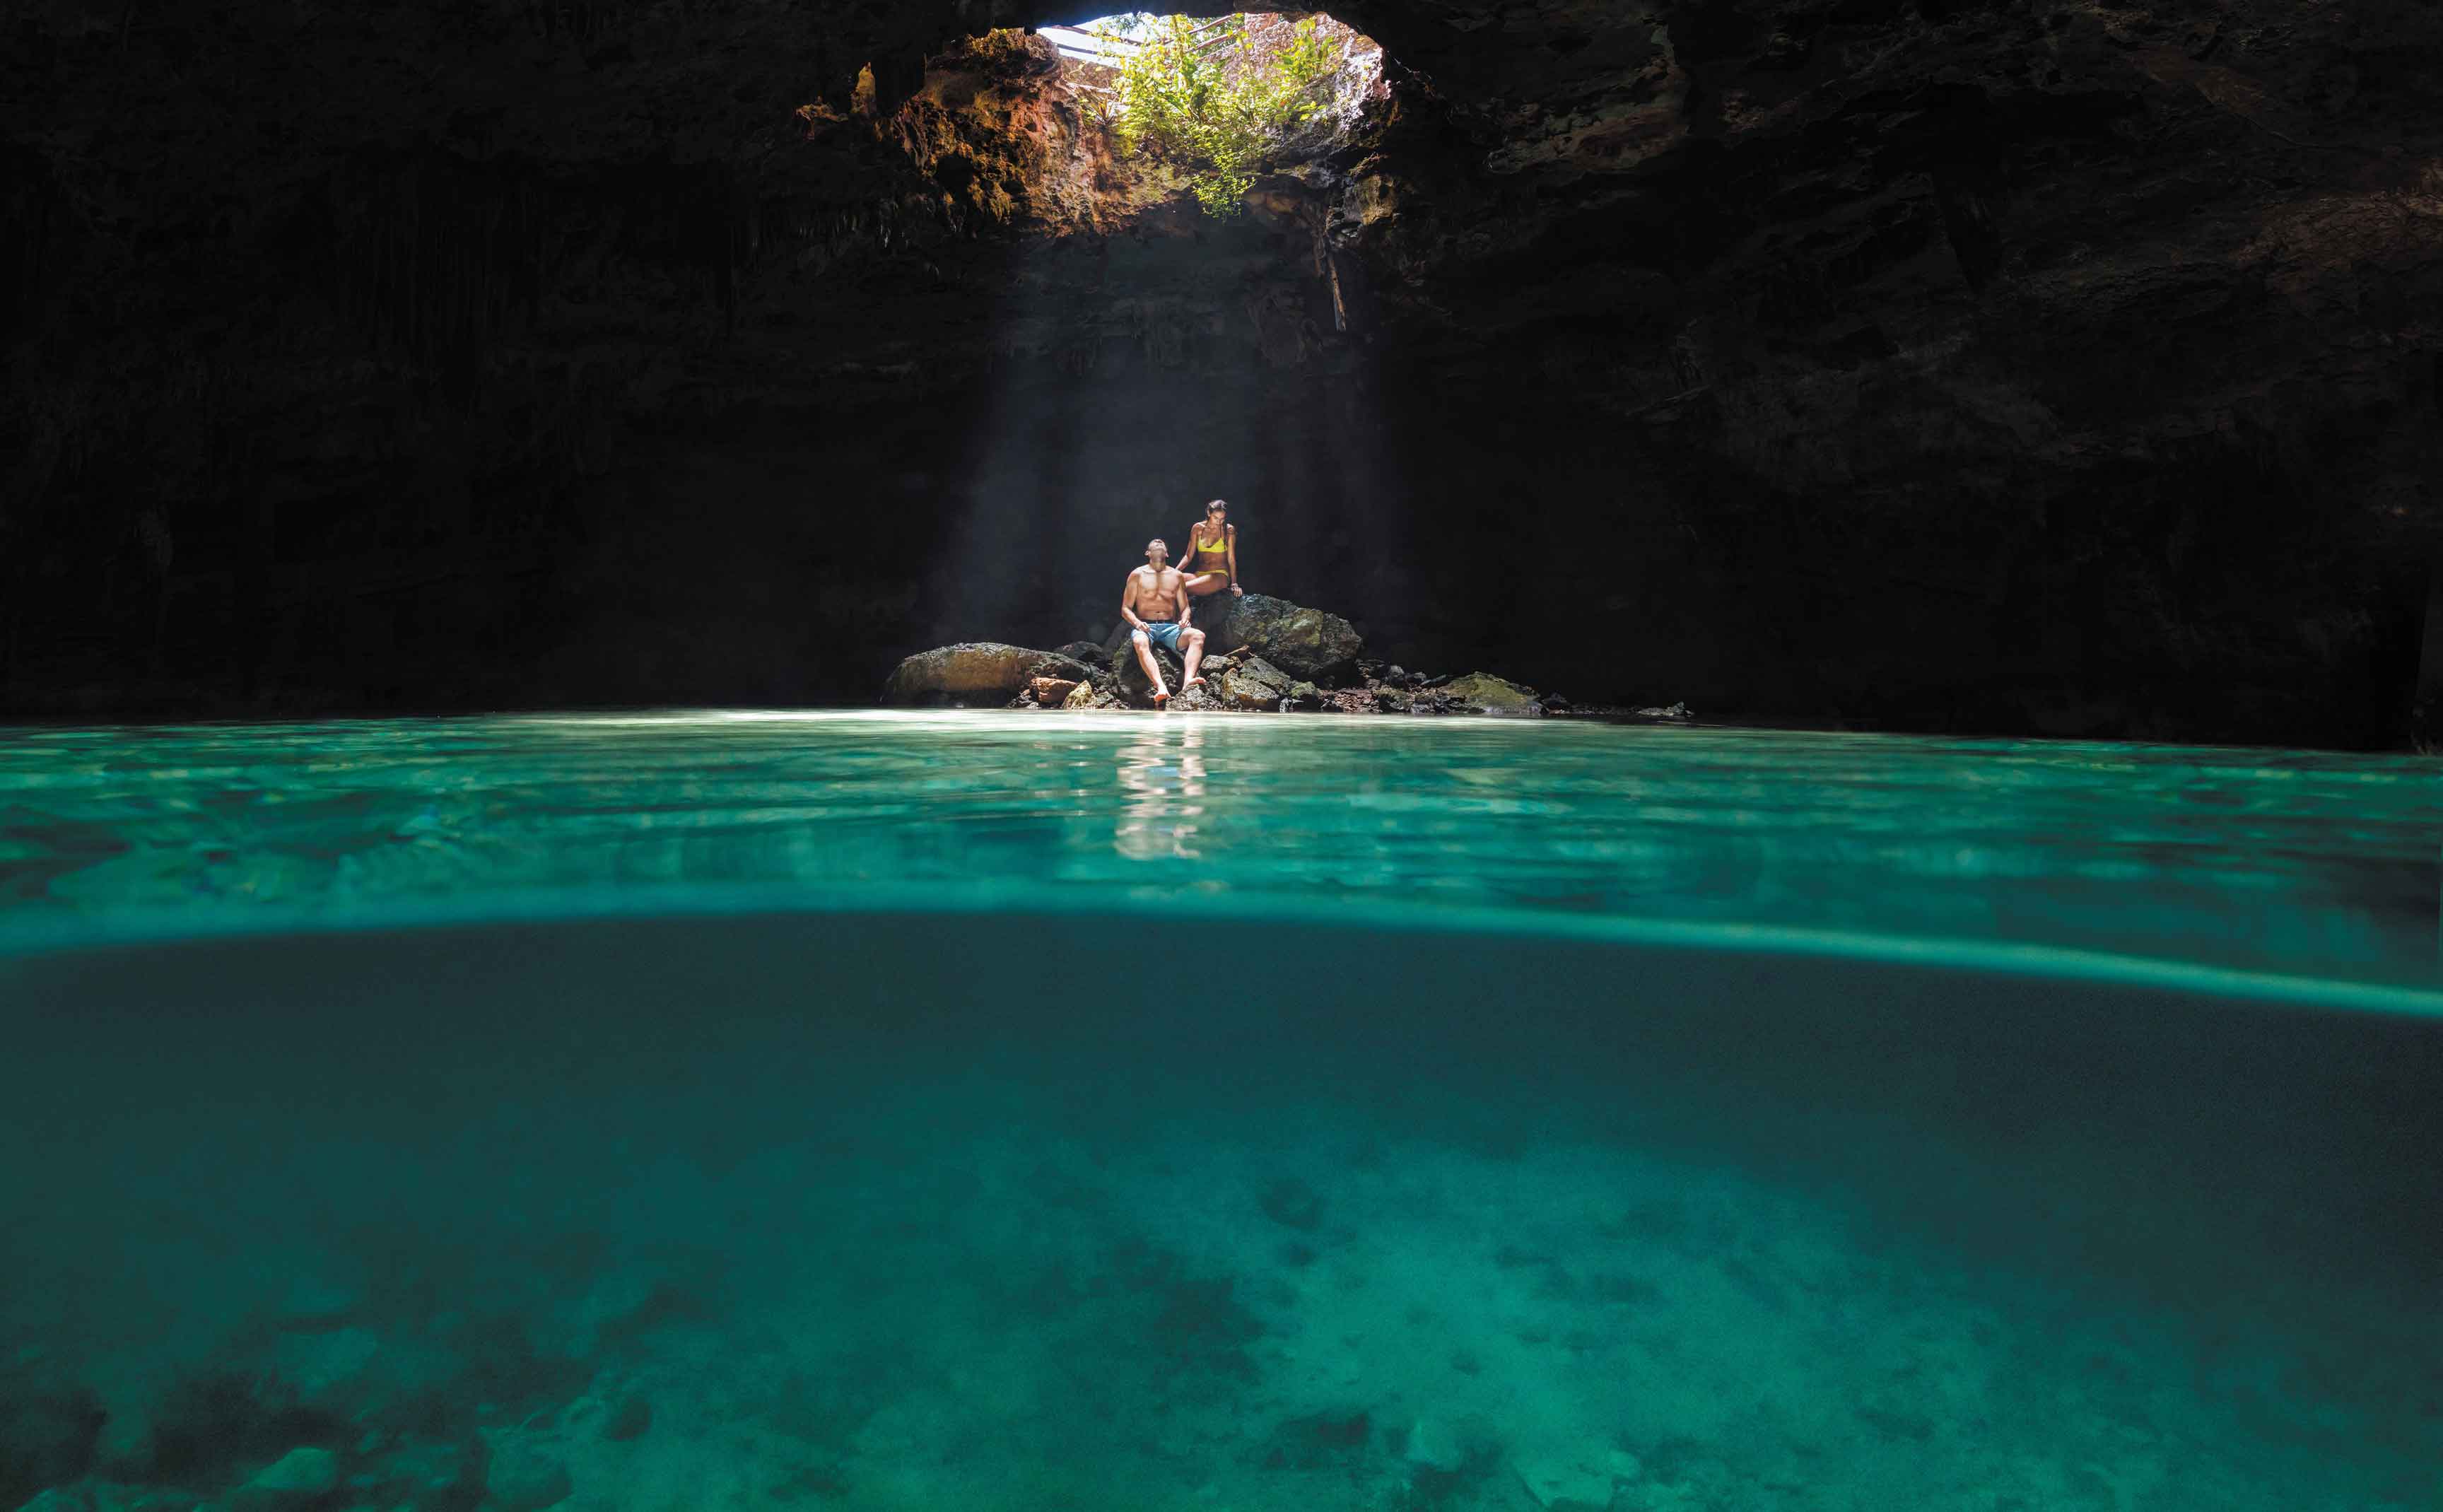 Verliebtes Paar sitzt während ihrer Kreuzfahrt in einer Cenote bzw. Unterwasserhöhle auf Steinen in Cozumel, Mexiko 